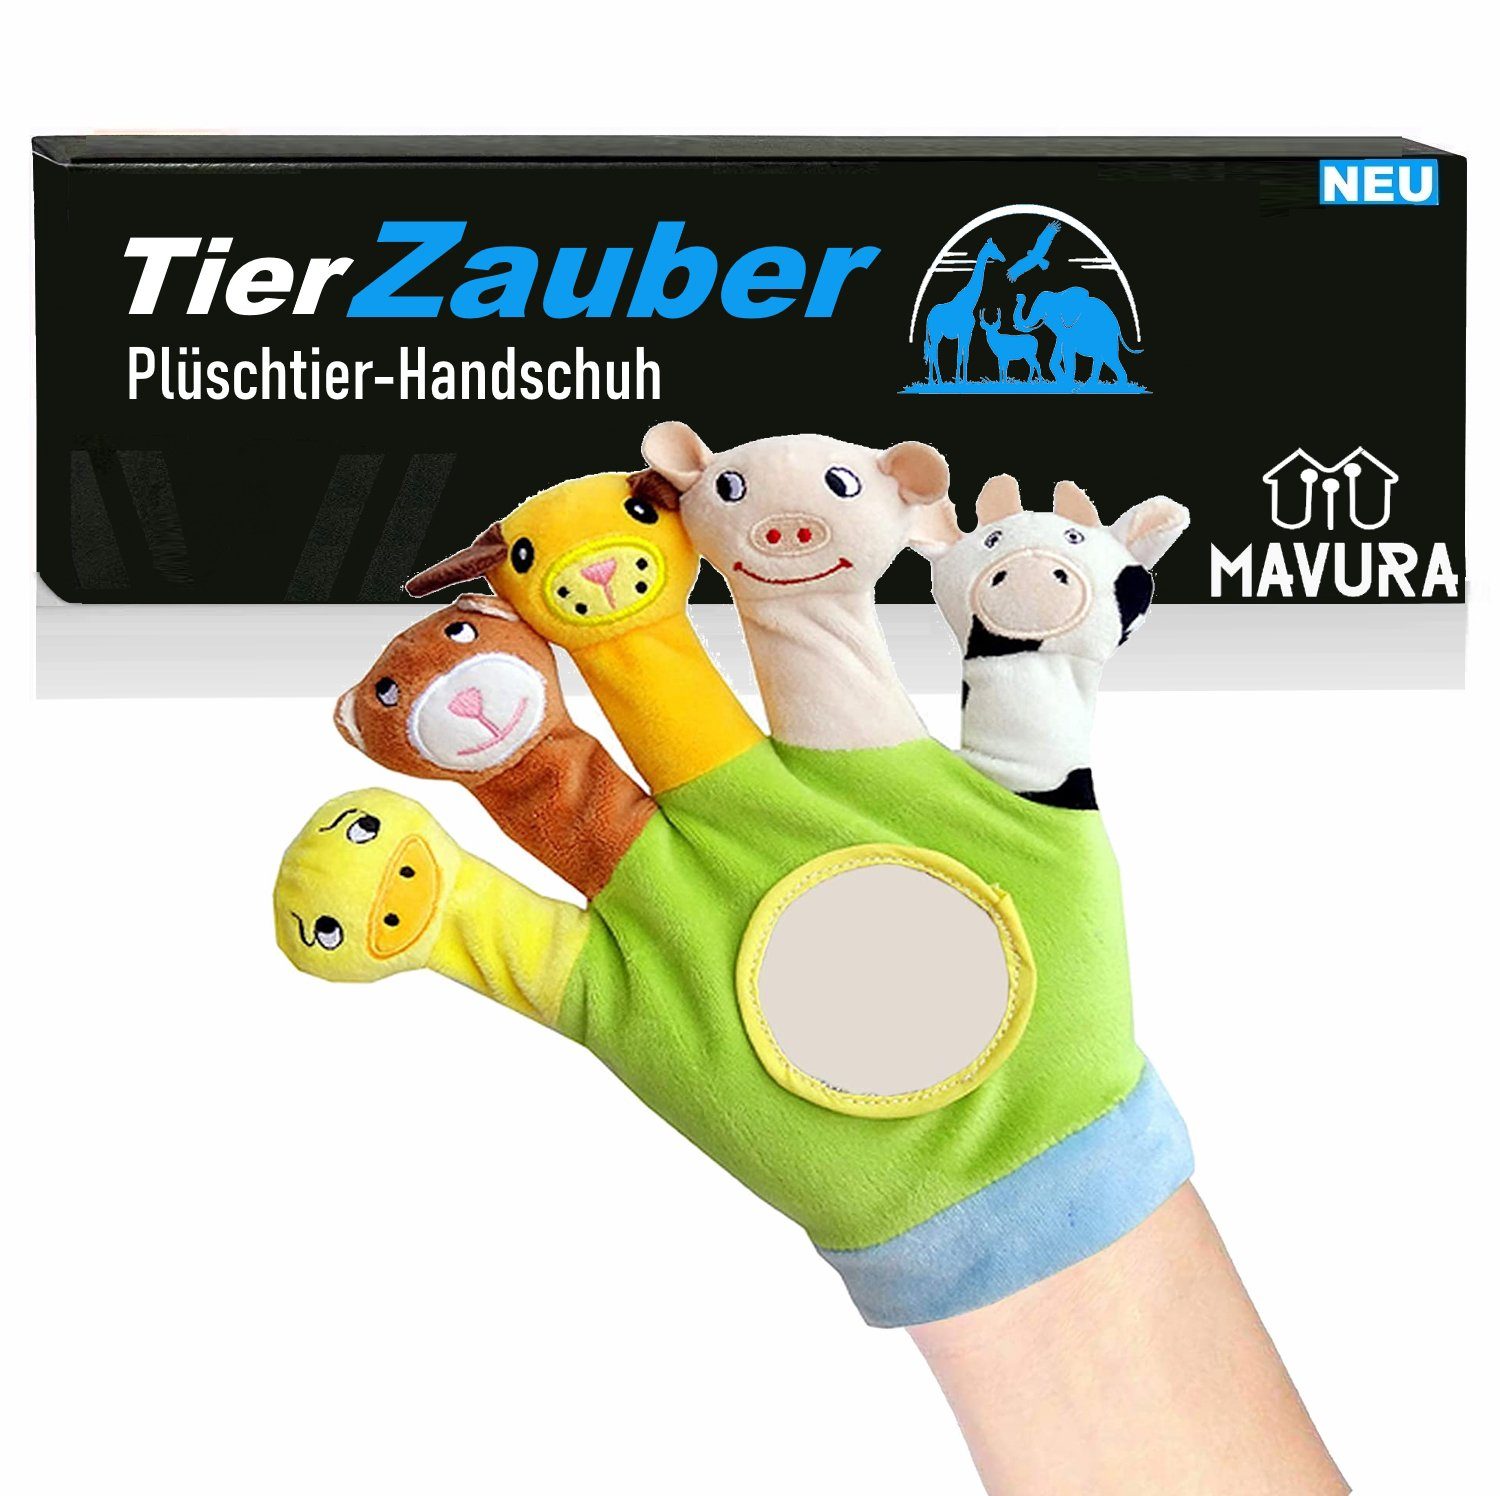 MAVURA Fingerpuppe TierZauber Safari Spielhandschuh Baby Beruhigungs Spielzeug, Fingerpuppen Handschuh - ab 0 Jahren - für Jungen & Mädchen